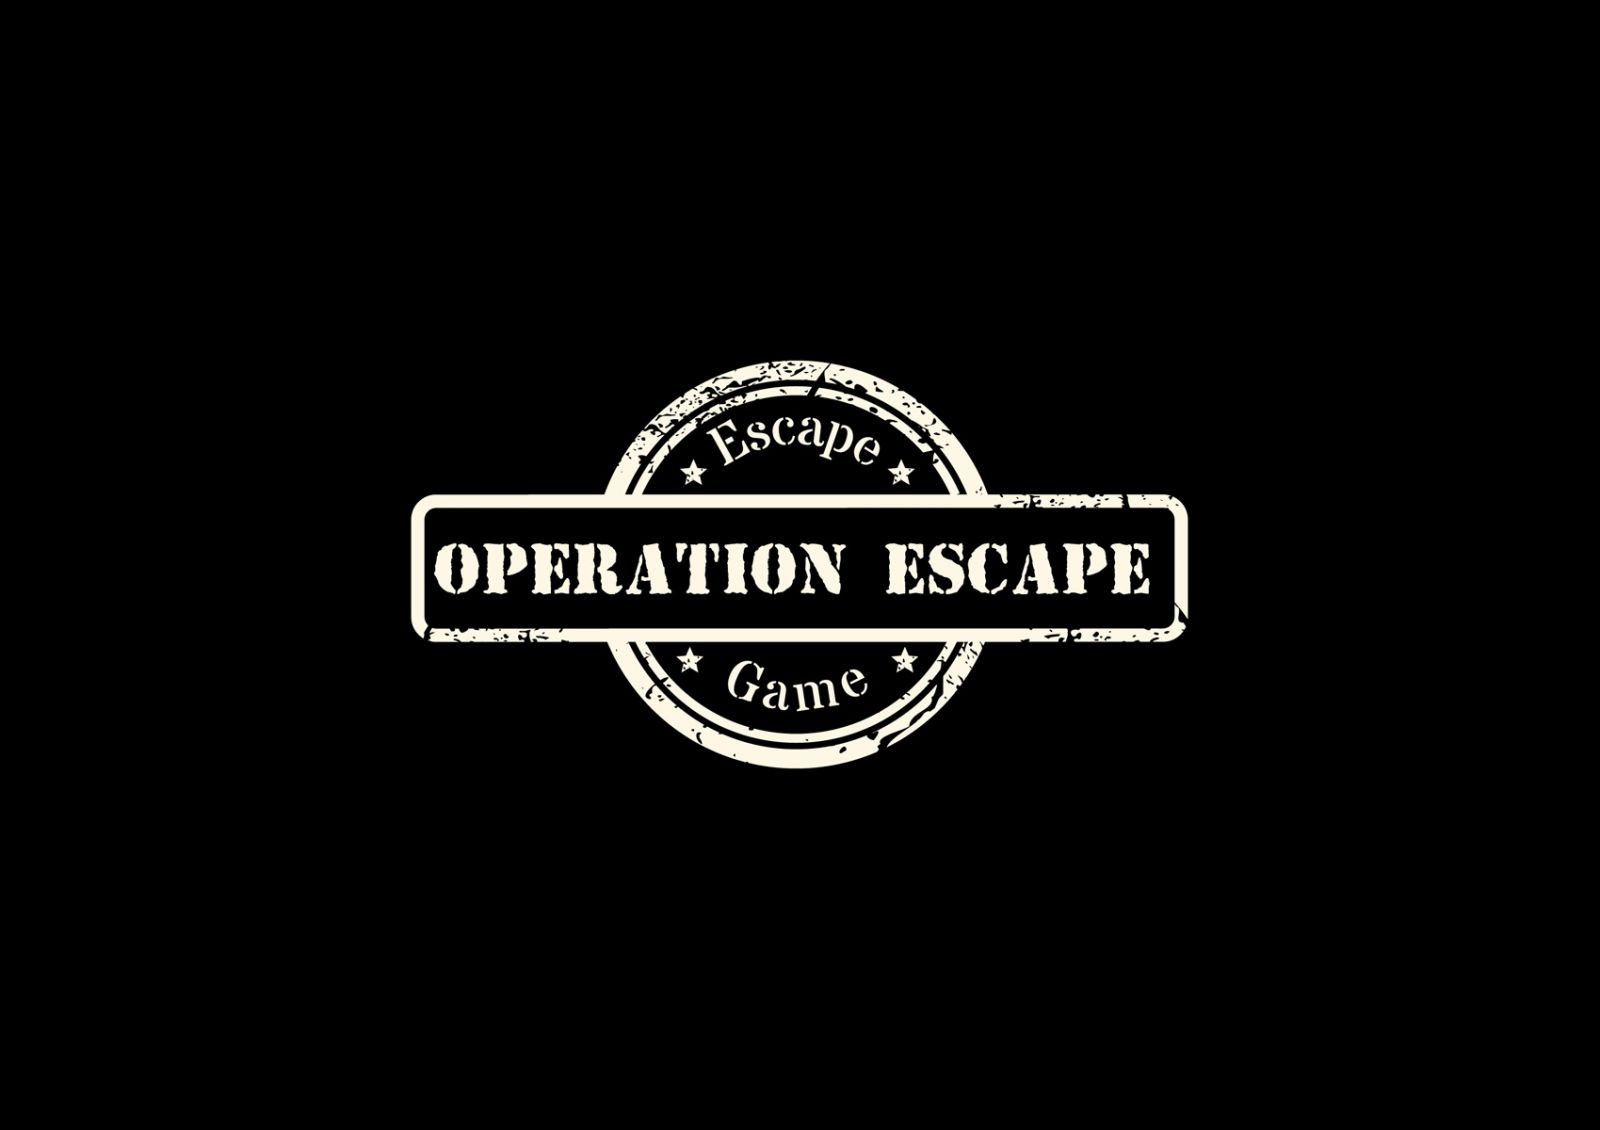 Opération Escape